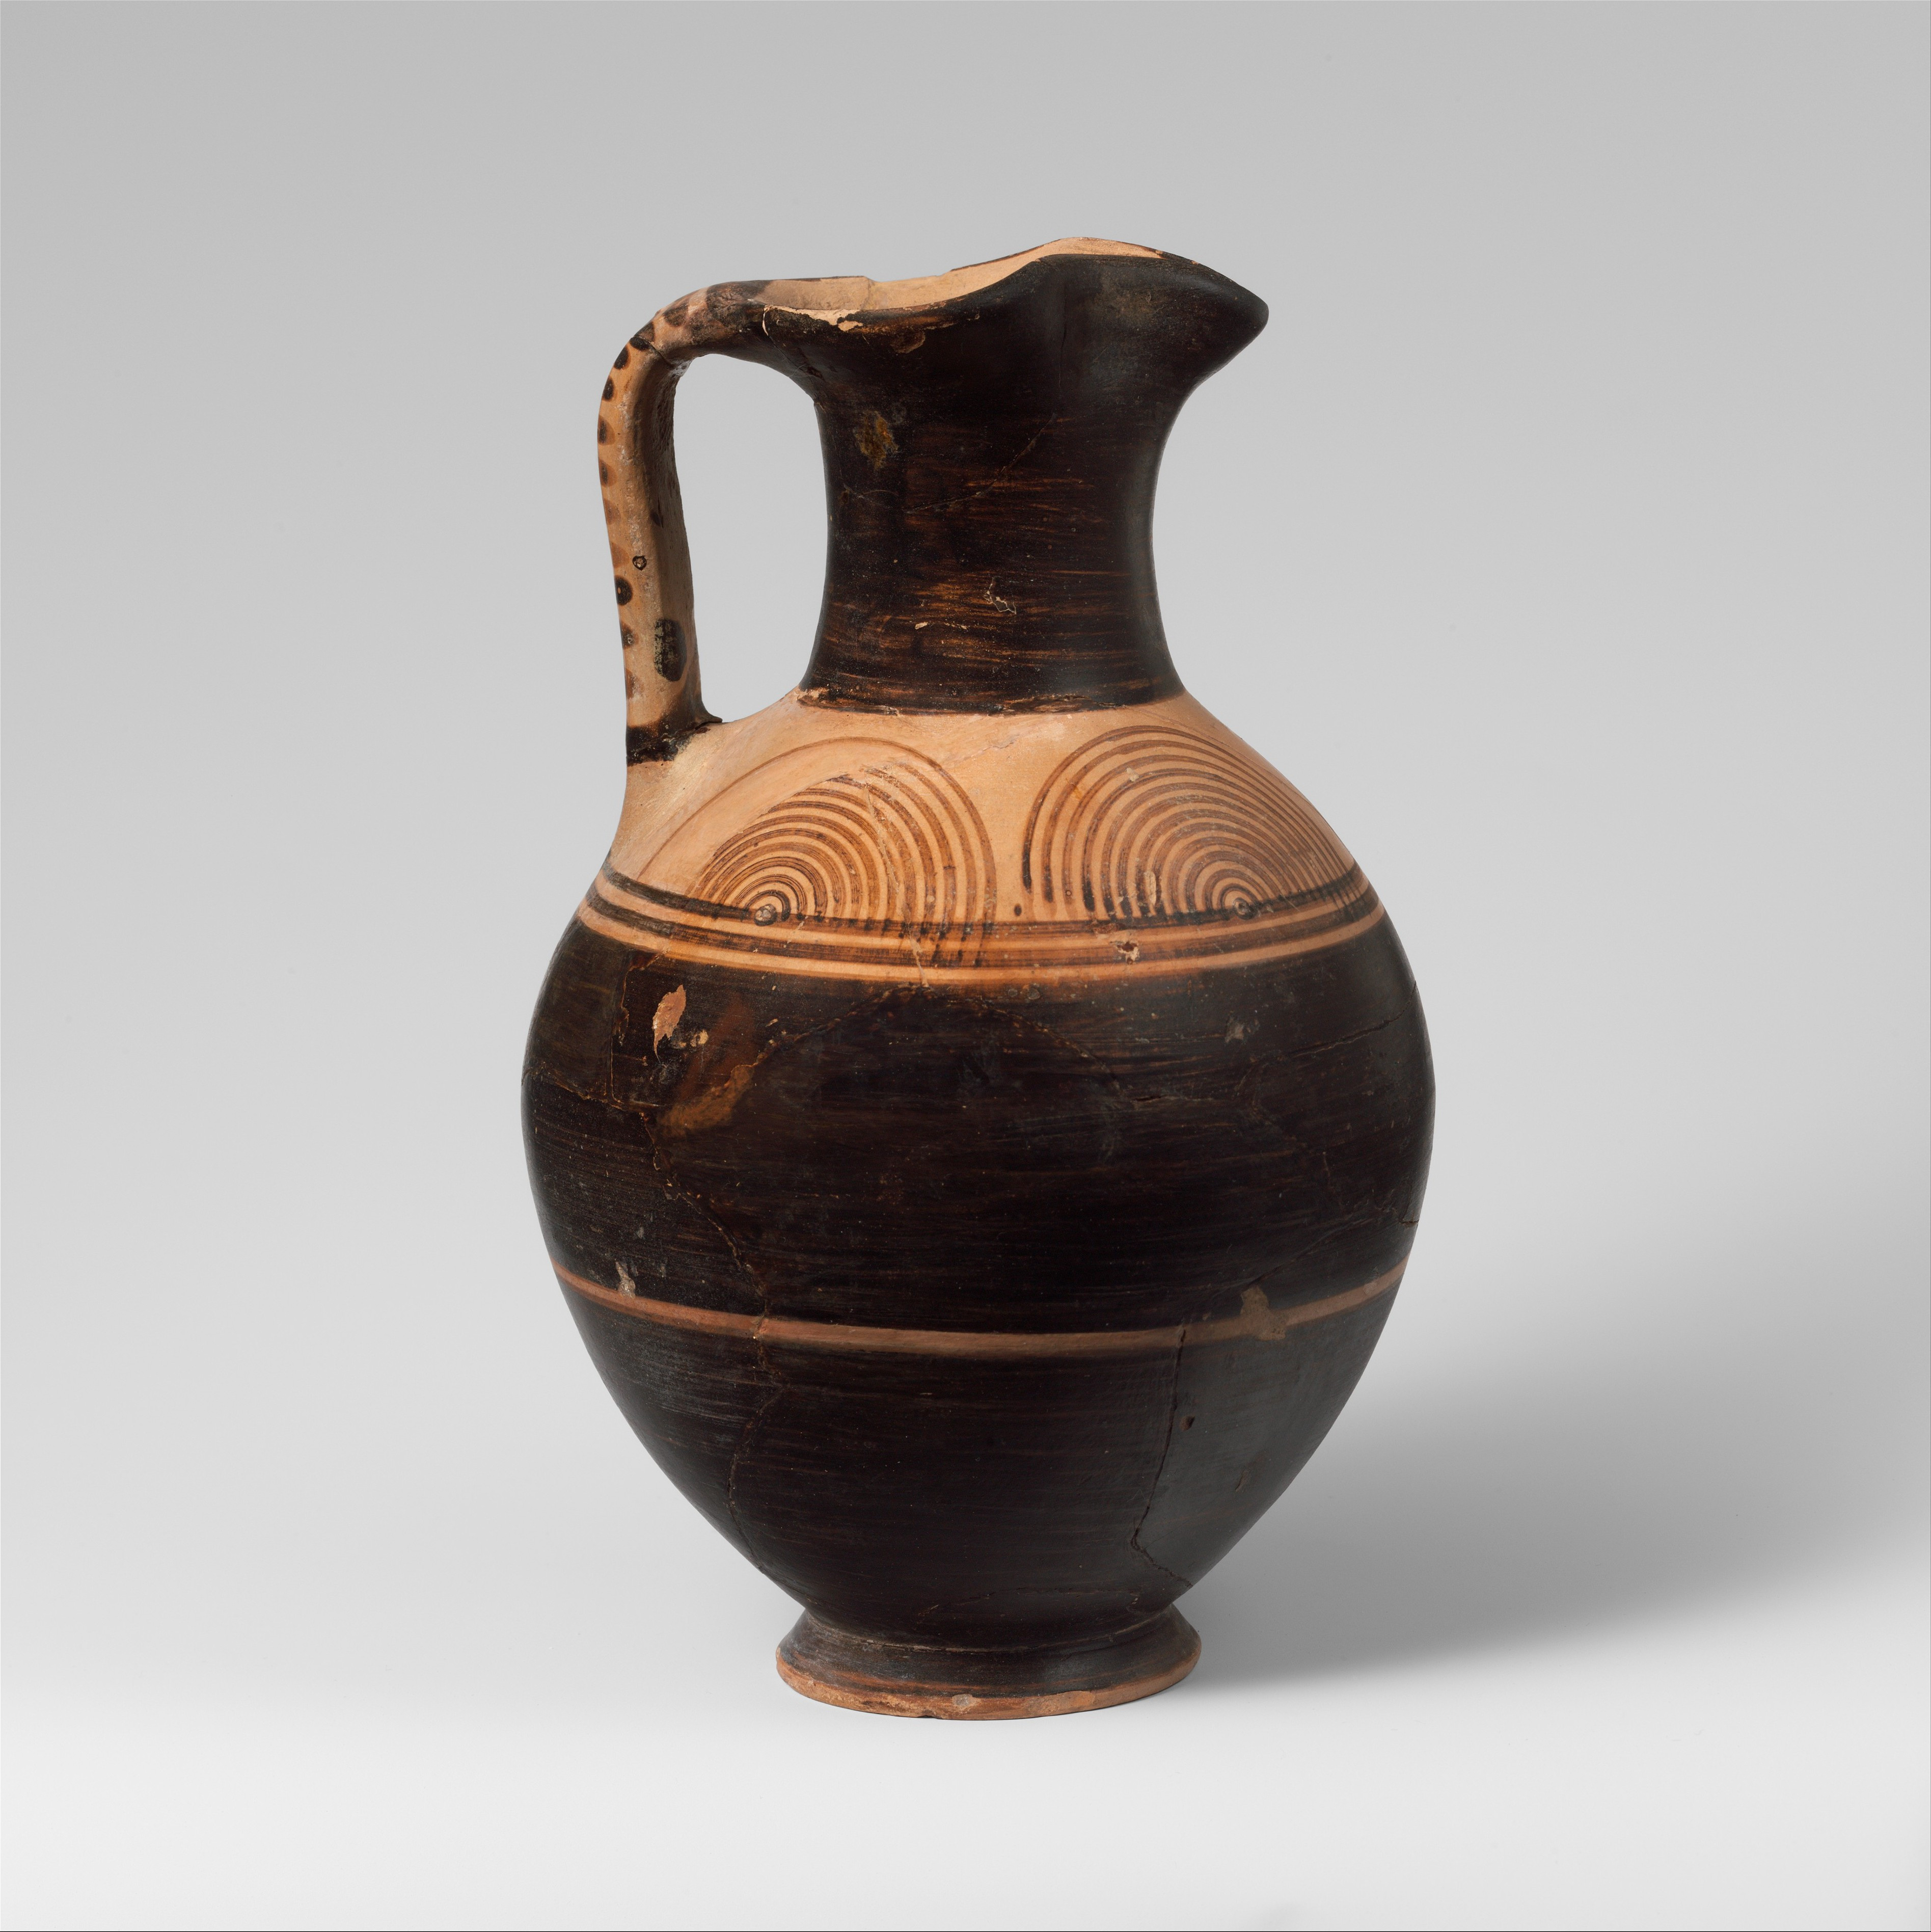 13 Stylish Terracotta Clay Vase 2024 free download terracotta clay vase of fileterracotta oinochoe jug met dp132634 wikimedia commons in fileterracotta oinochoe jug met dp132634